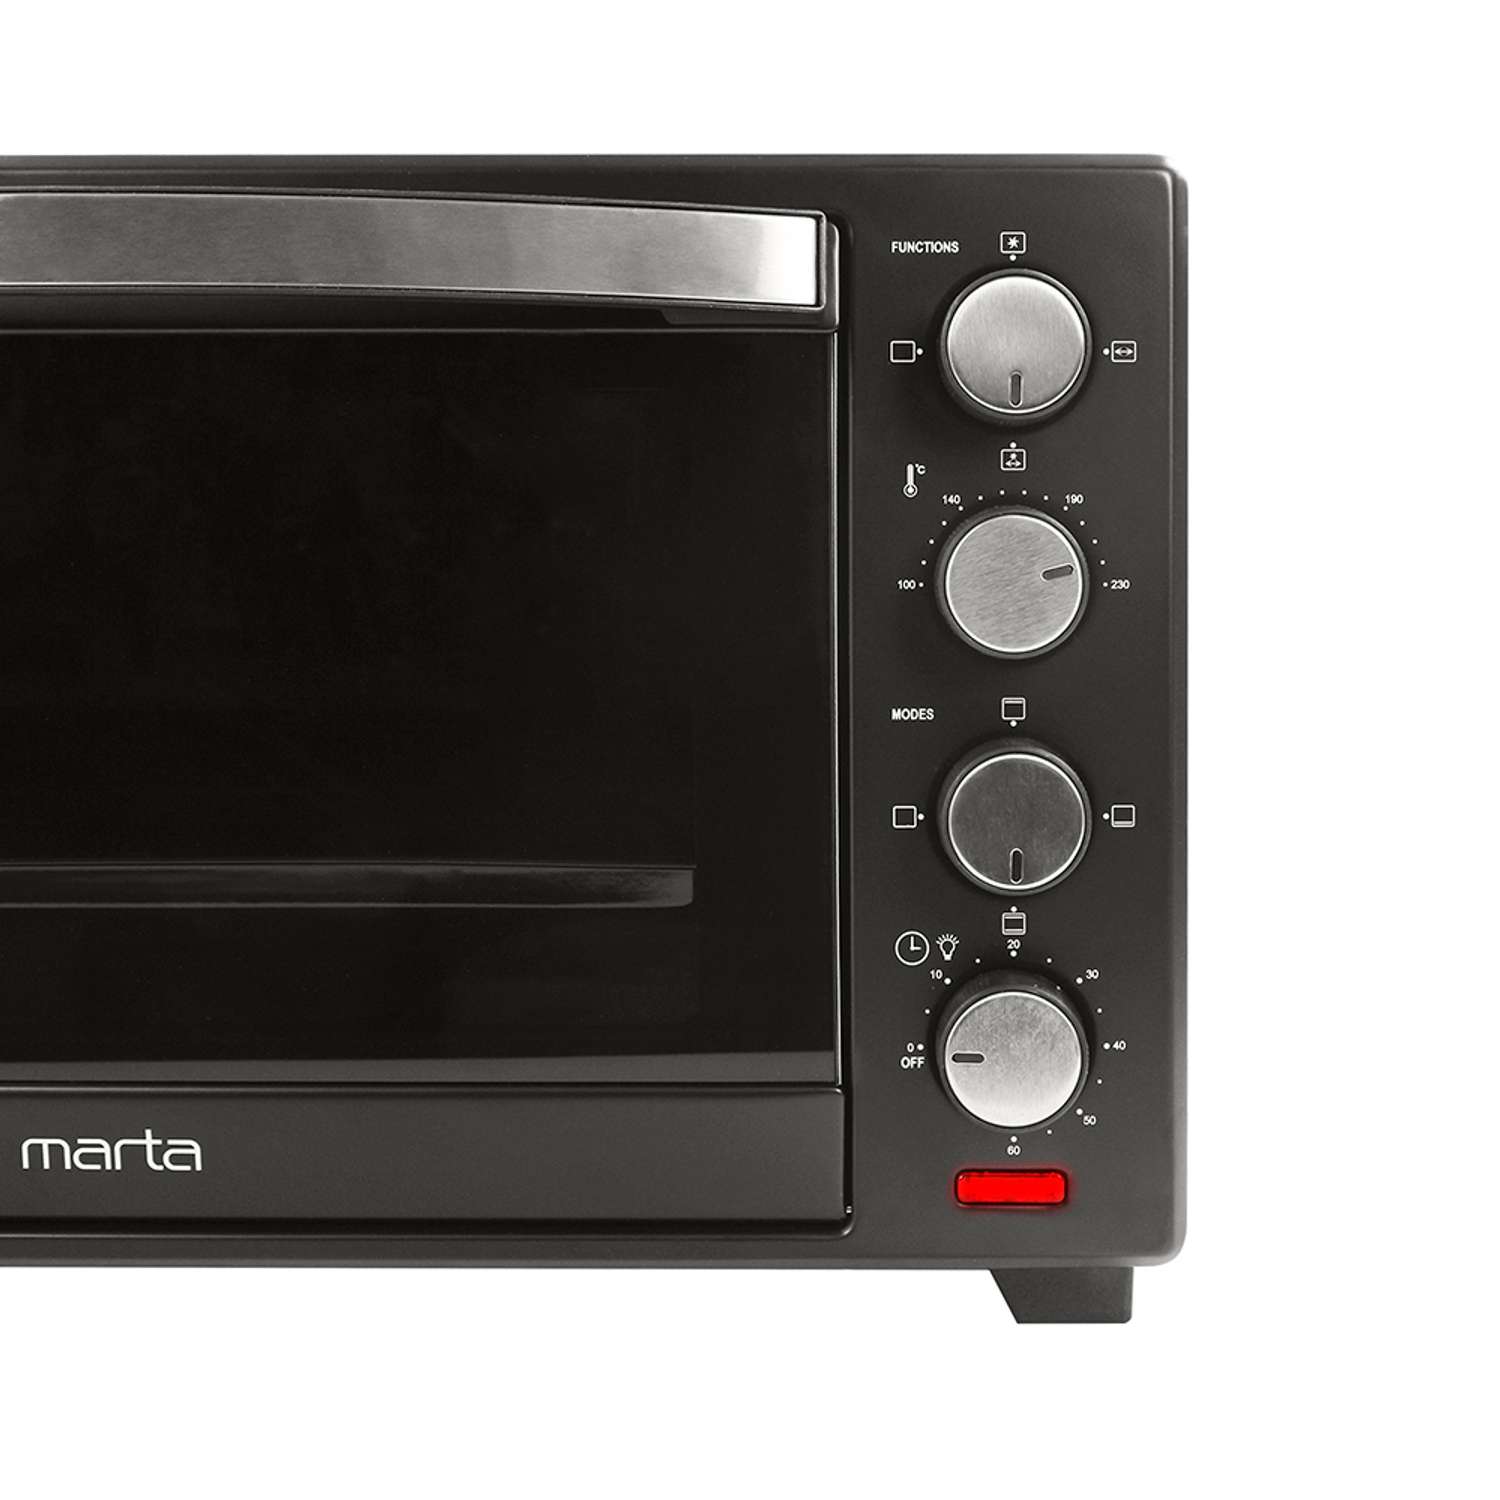 Мини-печь MARTA MT-4281 духовой шкаф 40 литров/конвекция/шашлычница/вертел/эмаль/черный жемчуг - фото 15